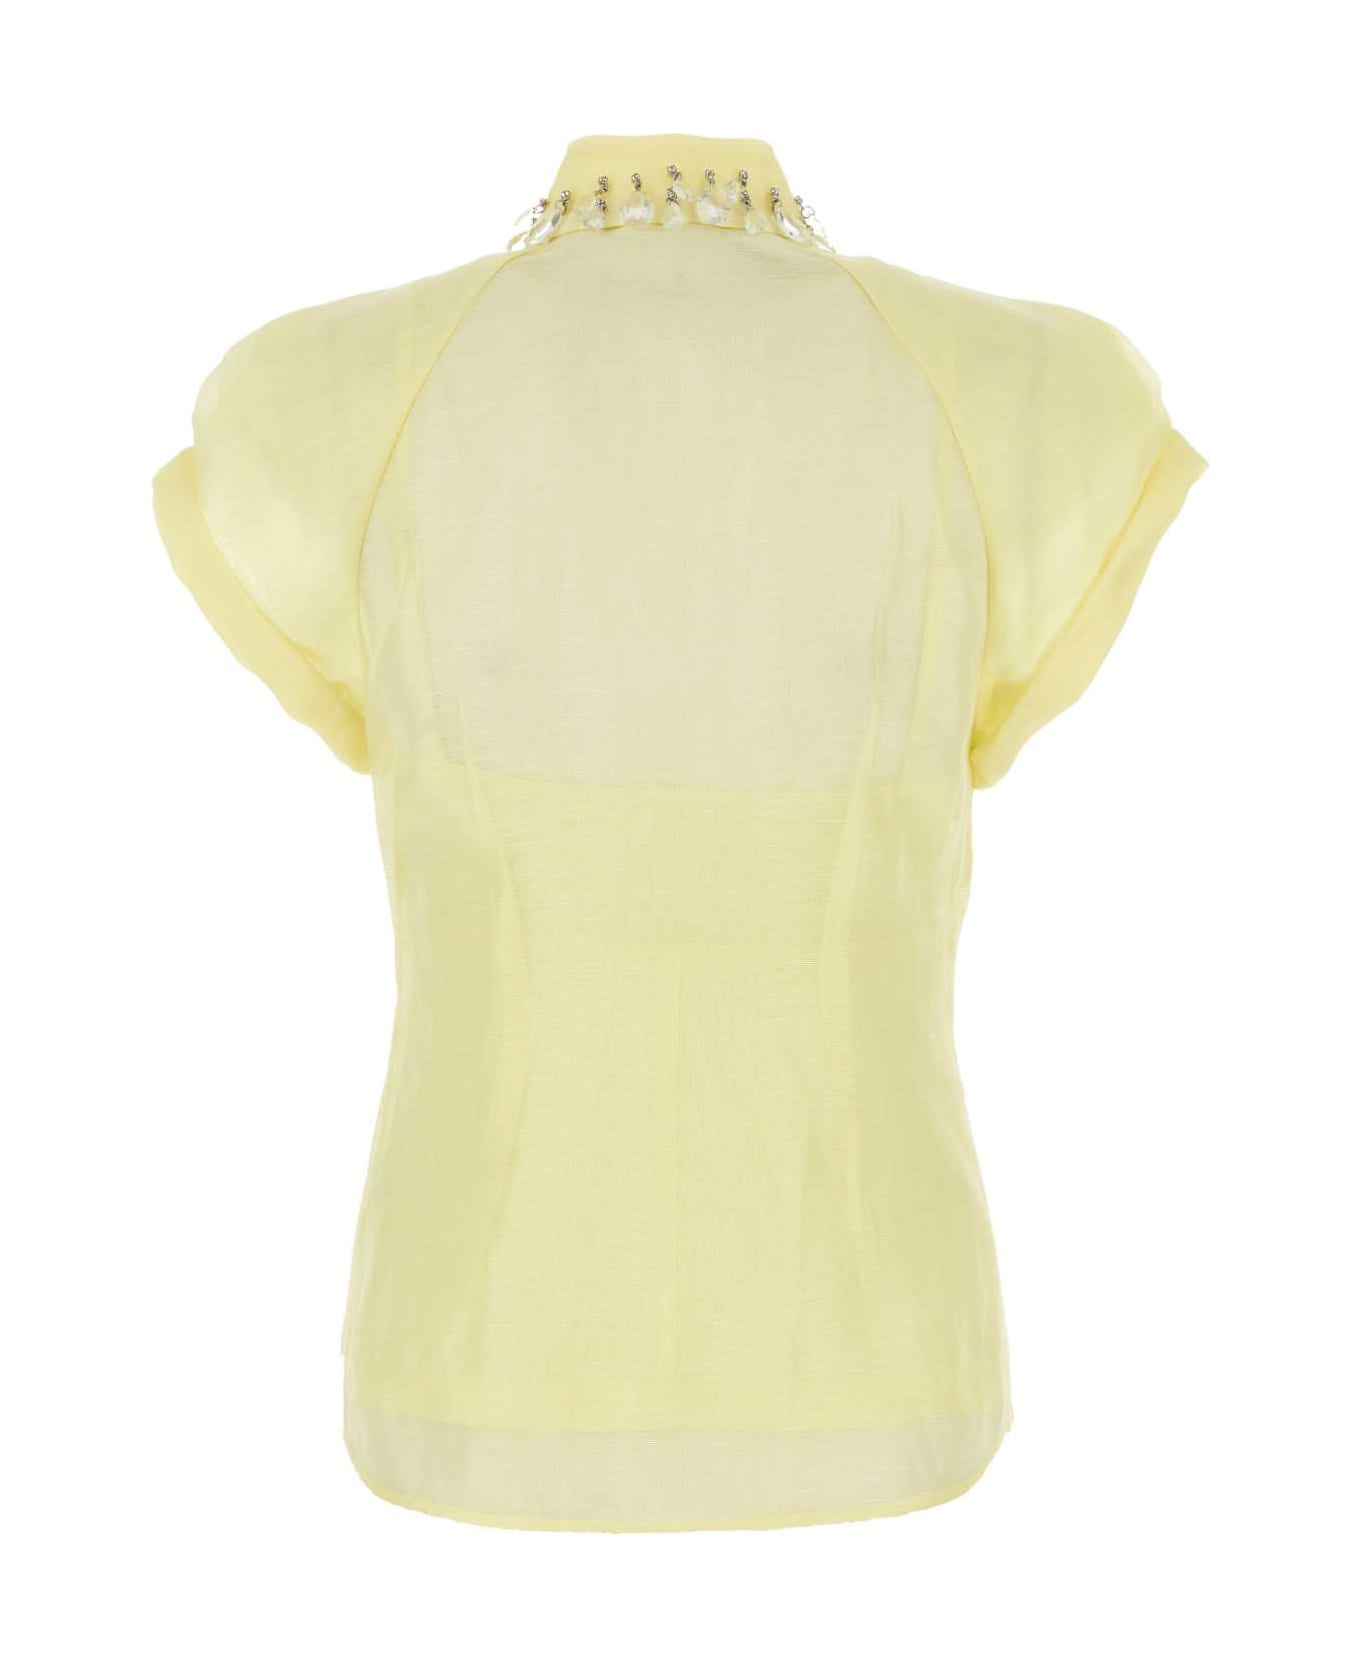 Zimmermann Pastel Yellow Linen Blend Matchmaker Shirt - Lemon ブラウス